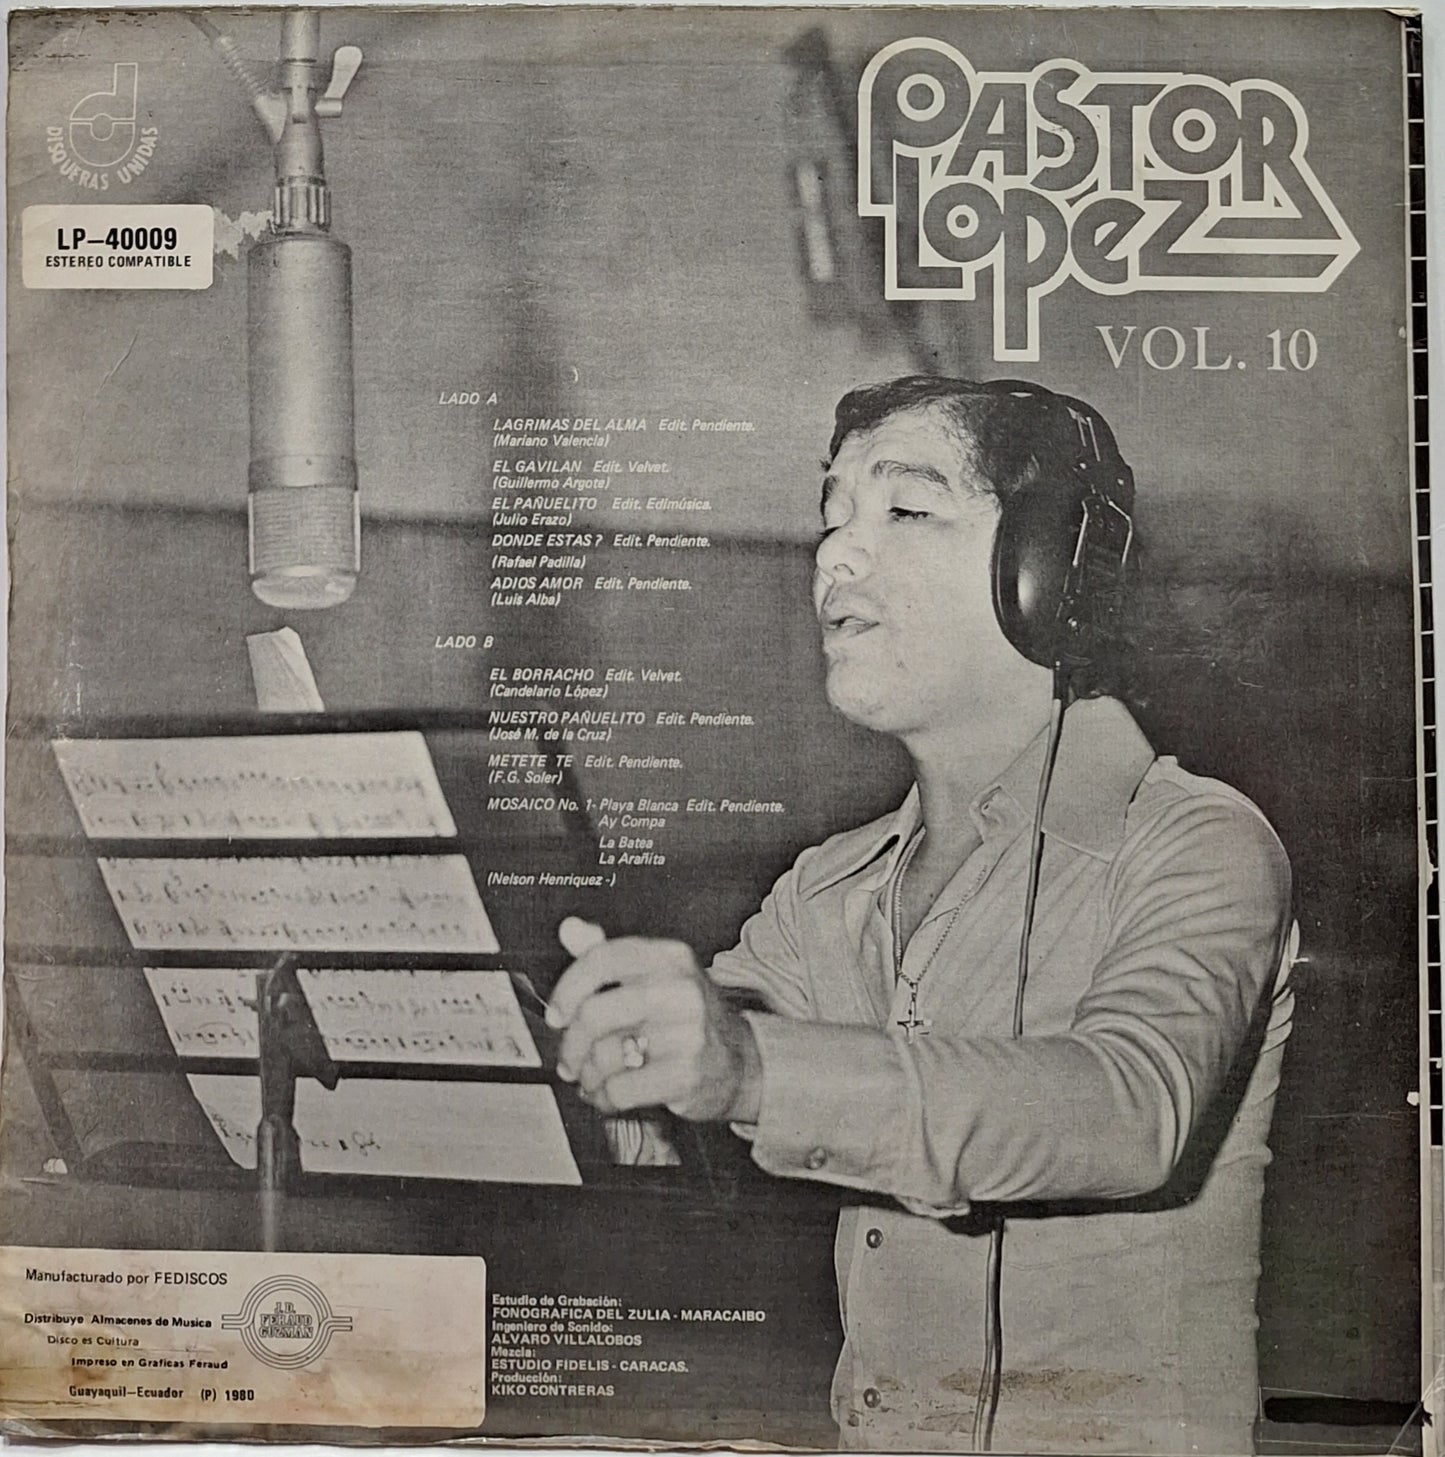 PASTOR LOPEZ - VOL 10 LP